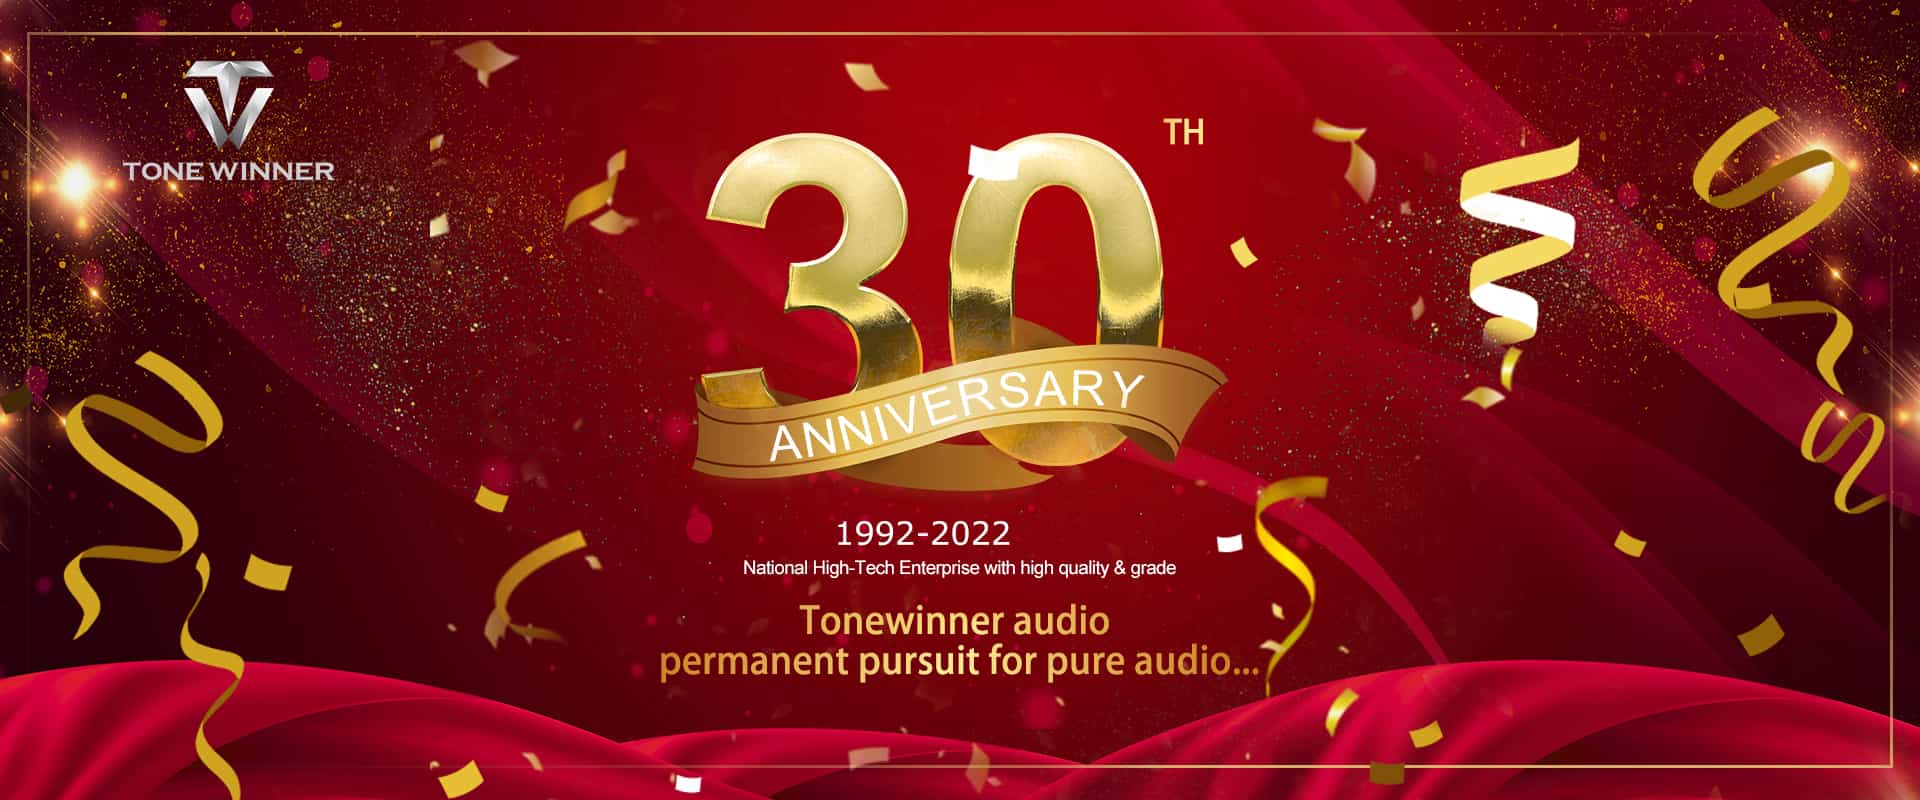 Obchody 30-lecia Tonewinner, gratulacje！
